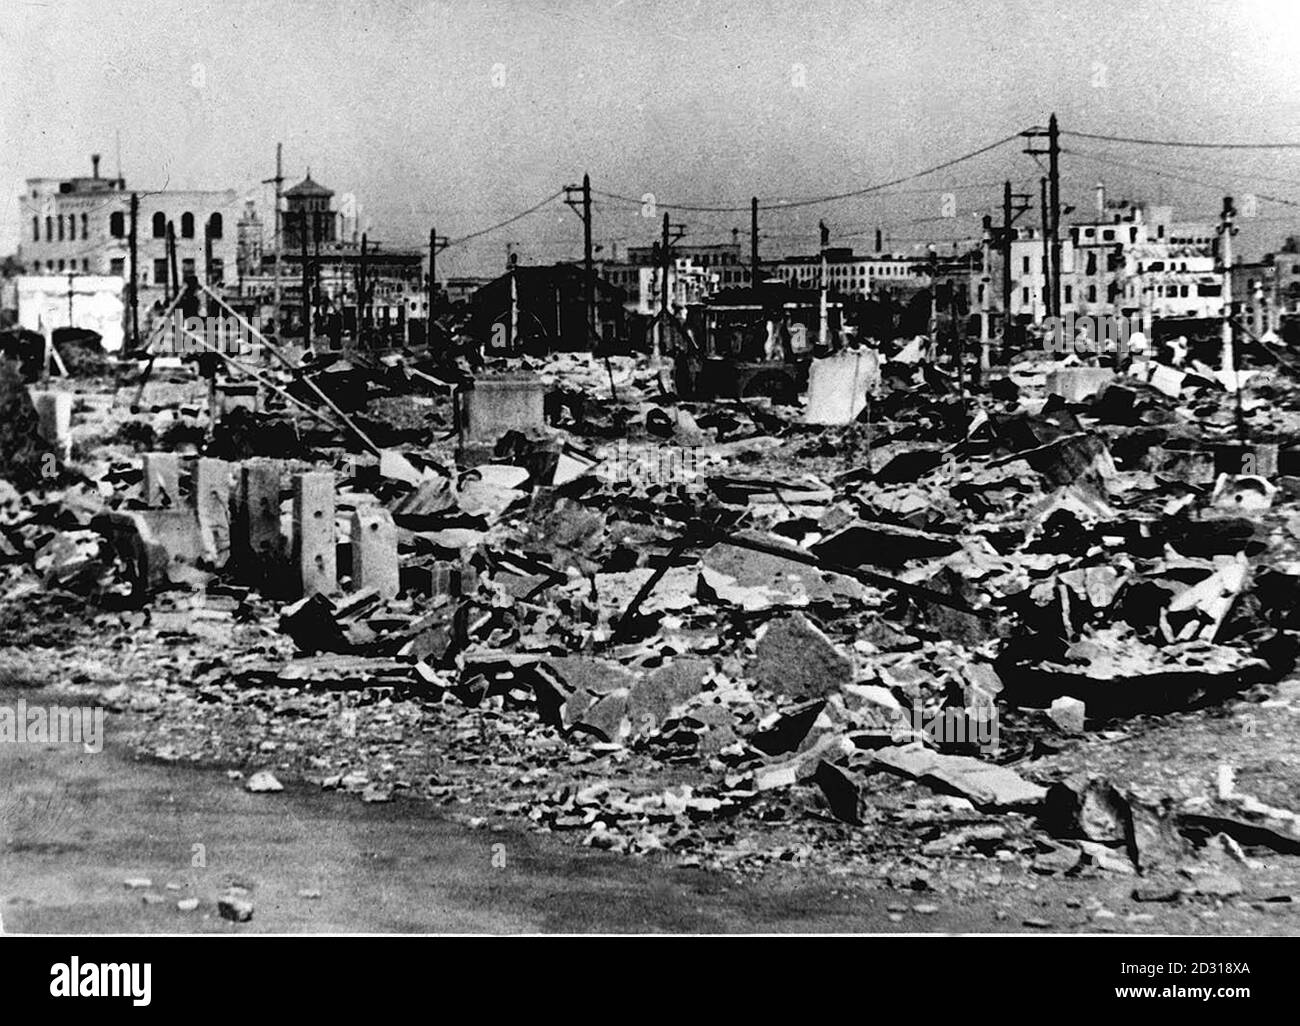 YOKOHAMA 1945: Vues sur les ravages causés dans le port japonais de Yokohama, au sud de Tokyo. La ville a été lourdement bombardée par les Américains avec des incendiaires et certaines zones ont été complètement brûlées. Sur ces sites, les habitants construisent des titanes à partir de l'épave. Photo de la collection PA de la Seconde Guerre mondiale : extrême-Orient Banque D'Images